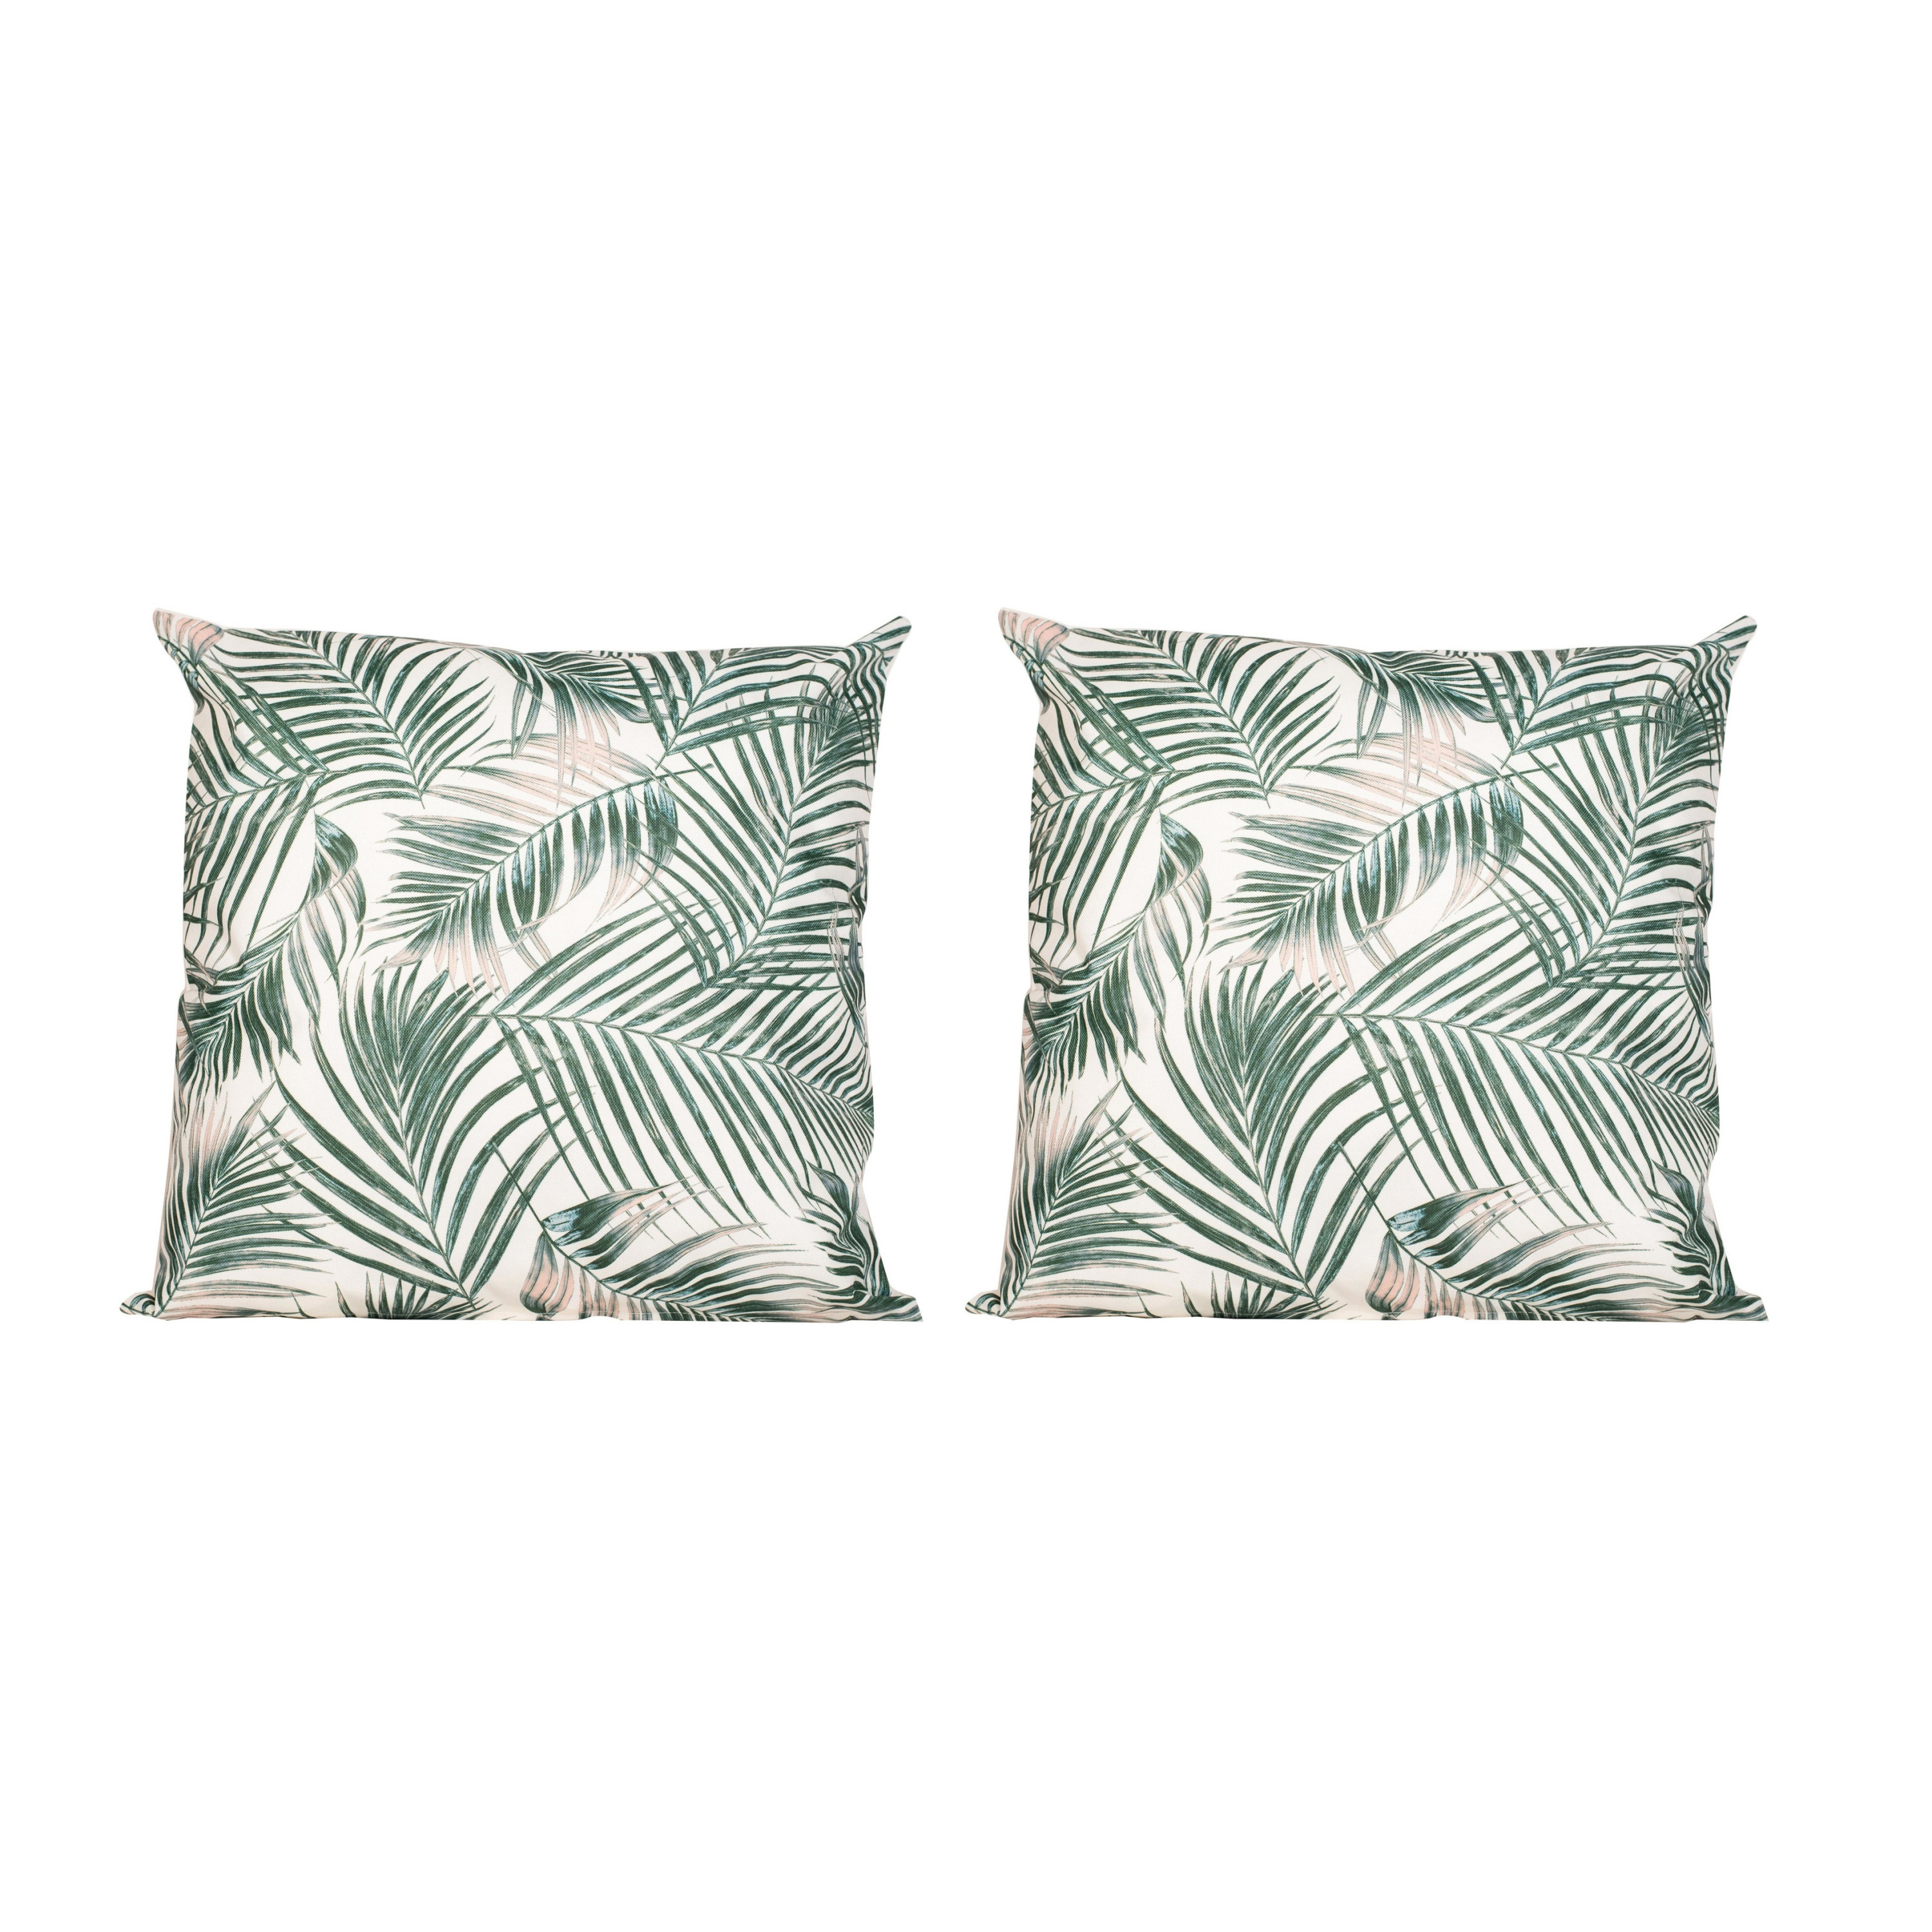 8x Bank-sier kussens met palm plant-bladeren print voor binnen en buiten 45 x 45 cm